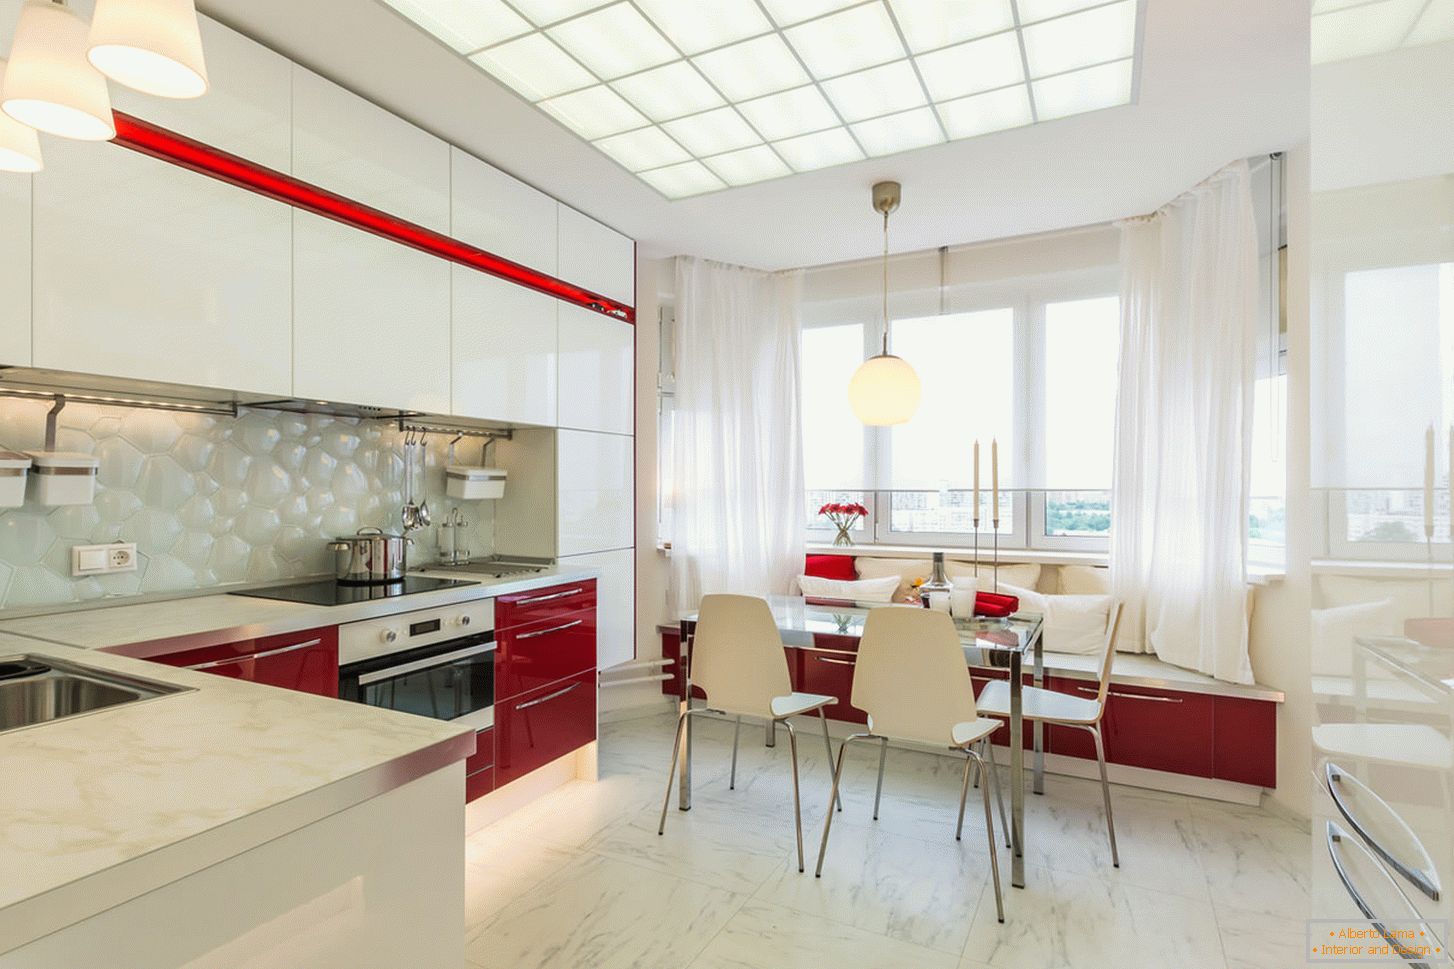 Chic kuchyne interiéru v bielej a červenej farbe